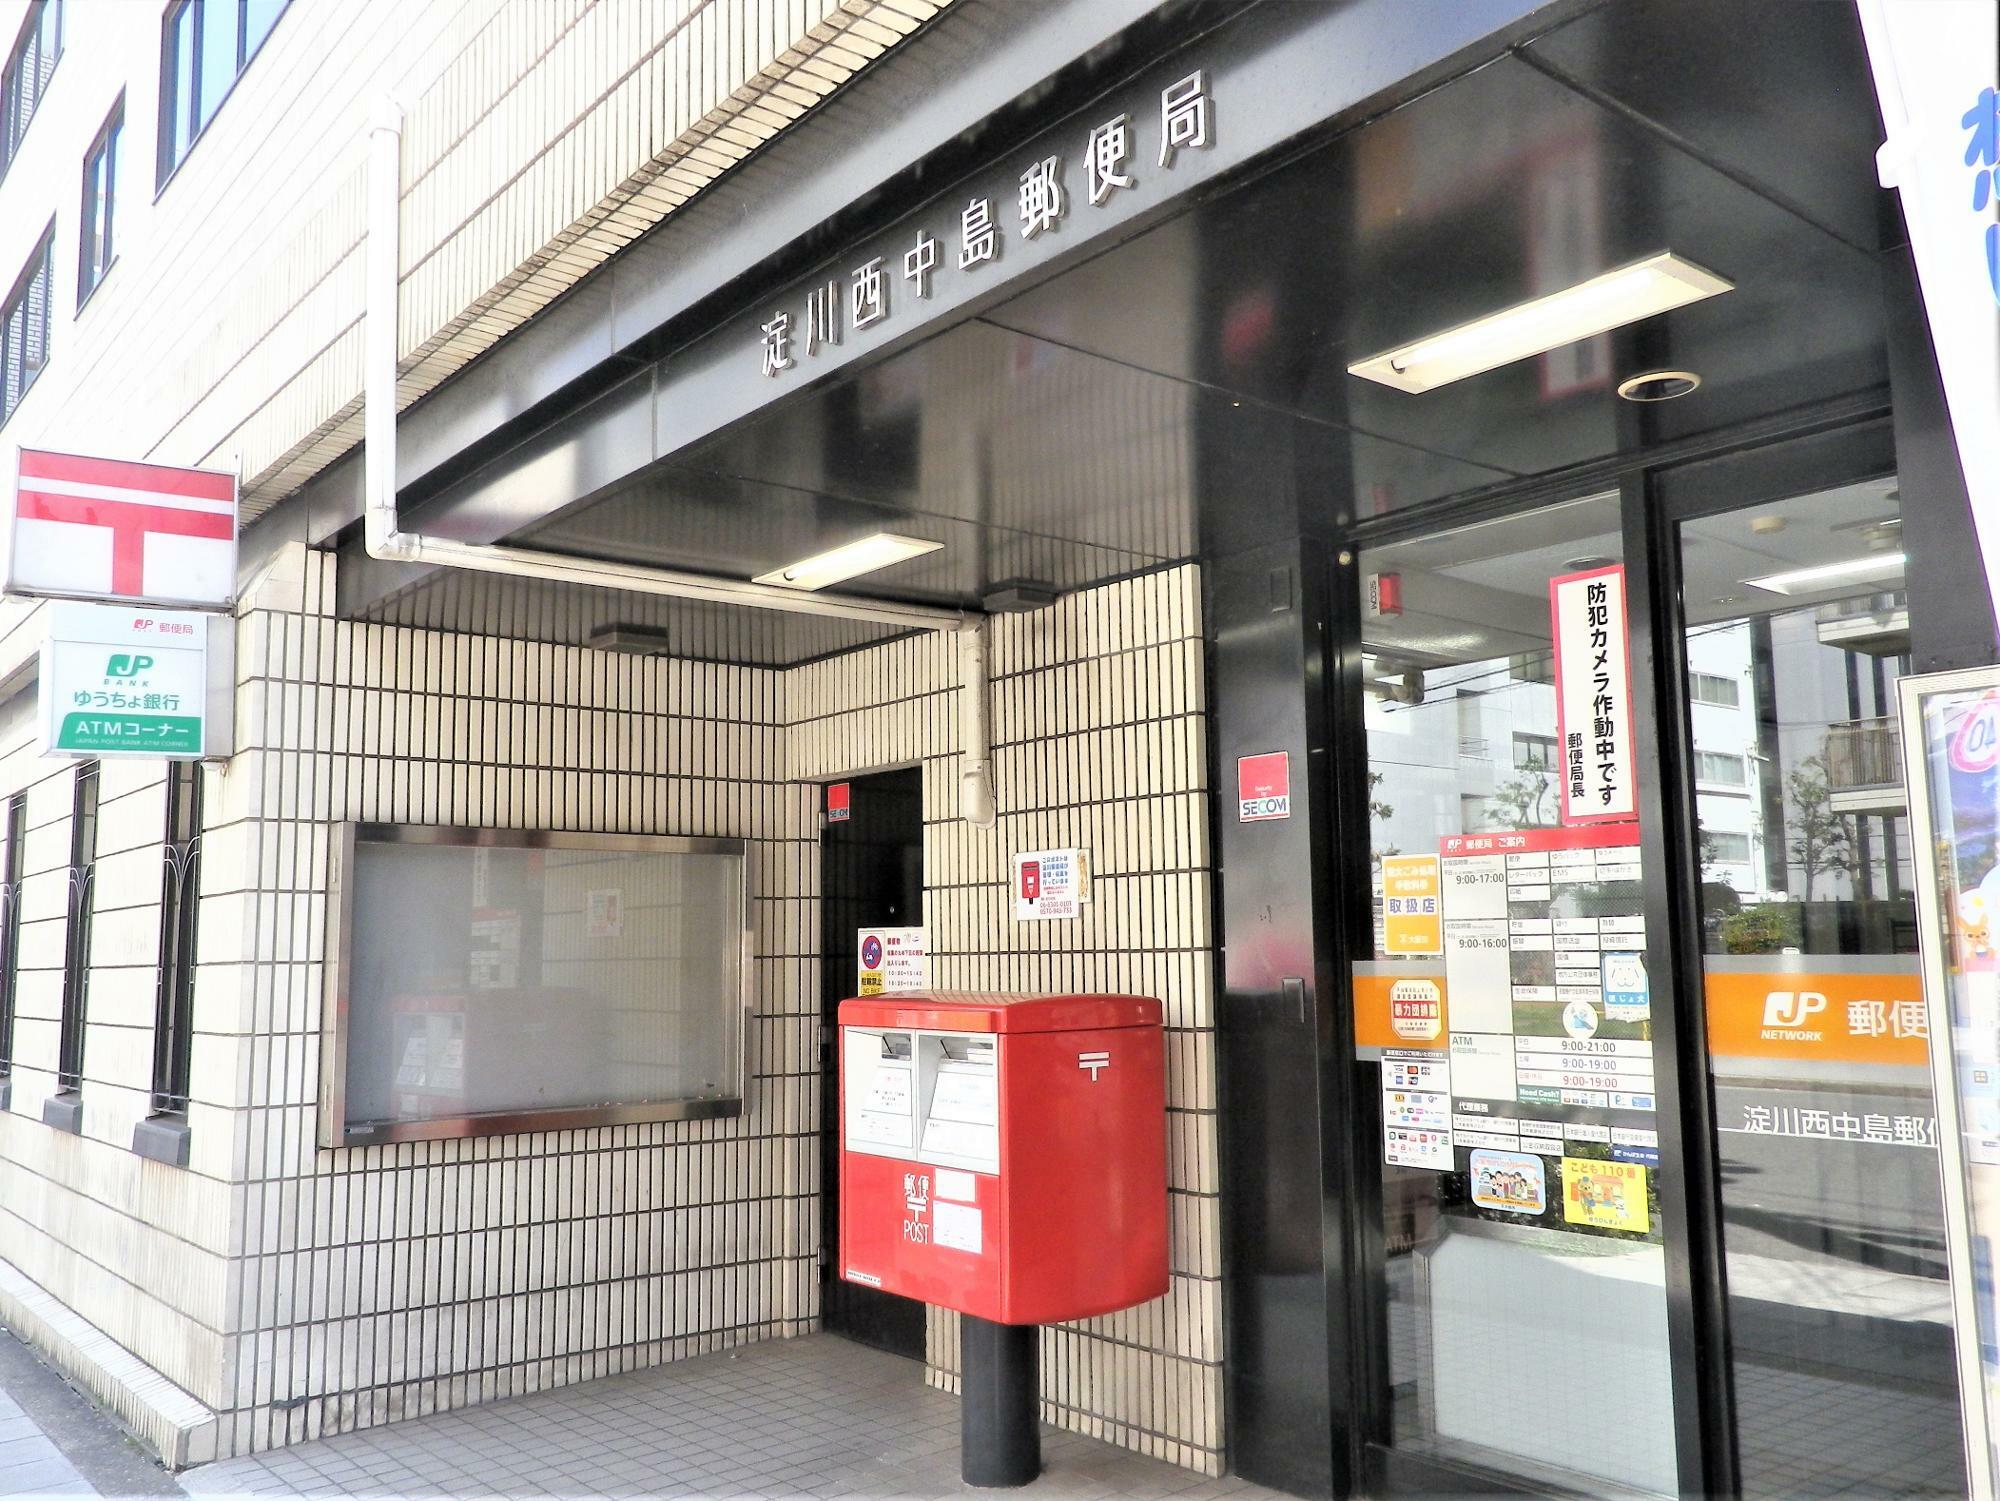 こじんまりした「淀川西中島郵便局」。